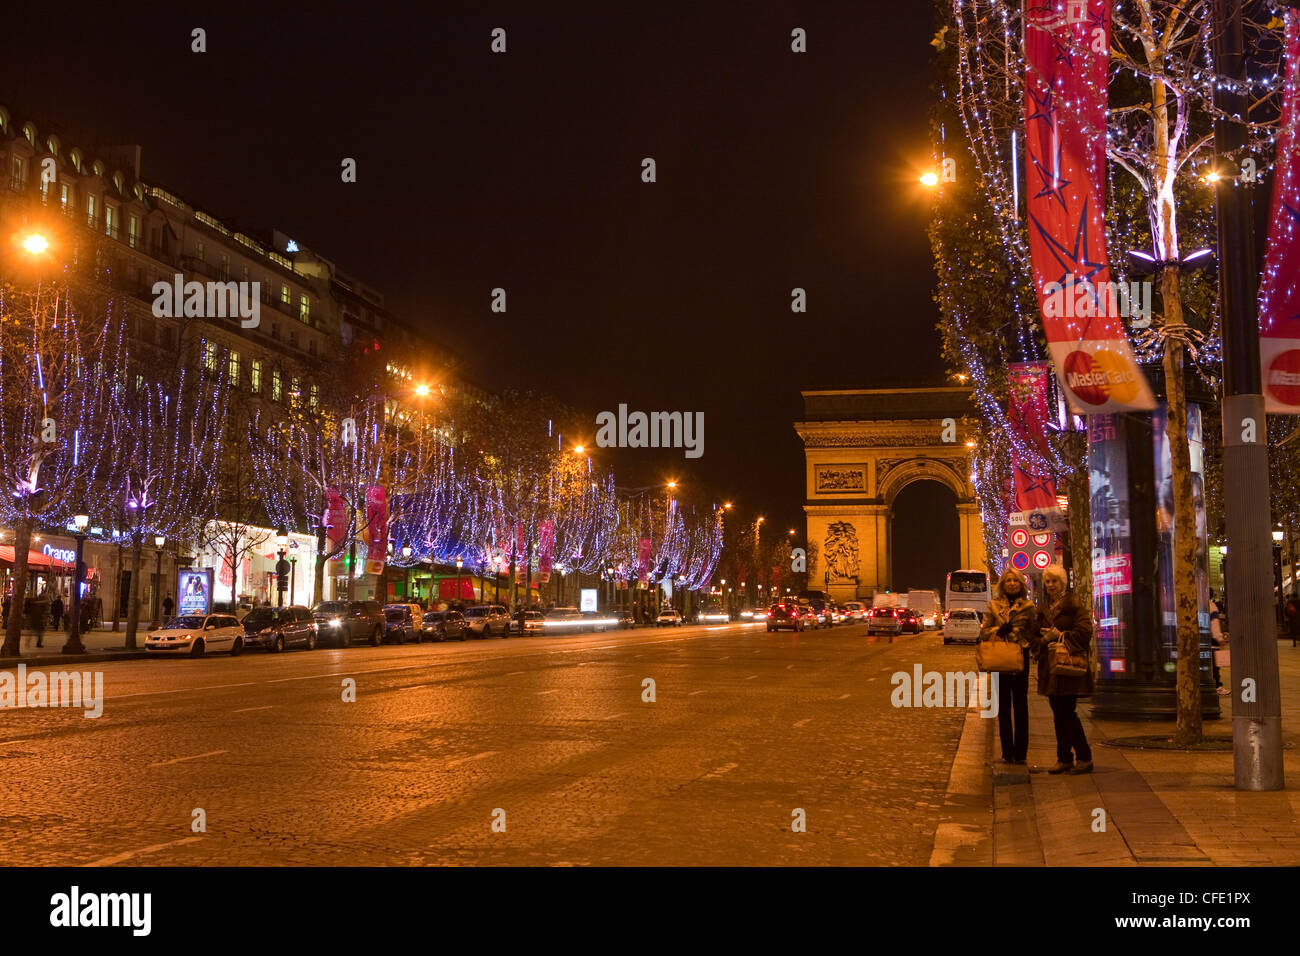 CHRISTMAS 2020 In Paris - Part 3 — Parisian Moments